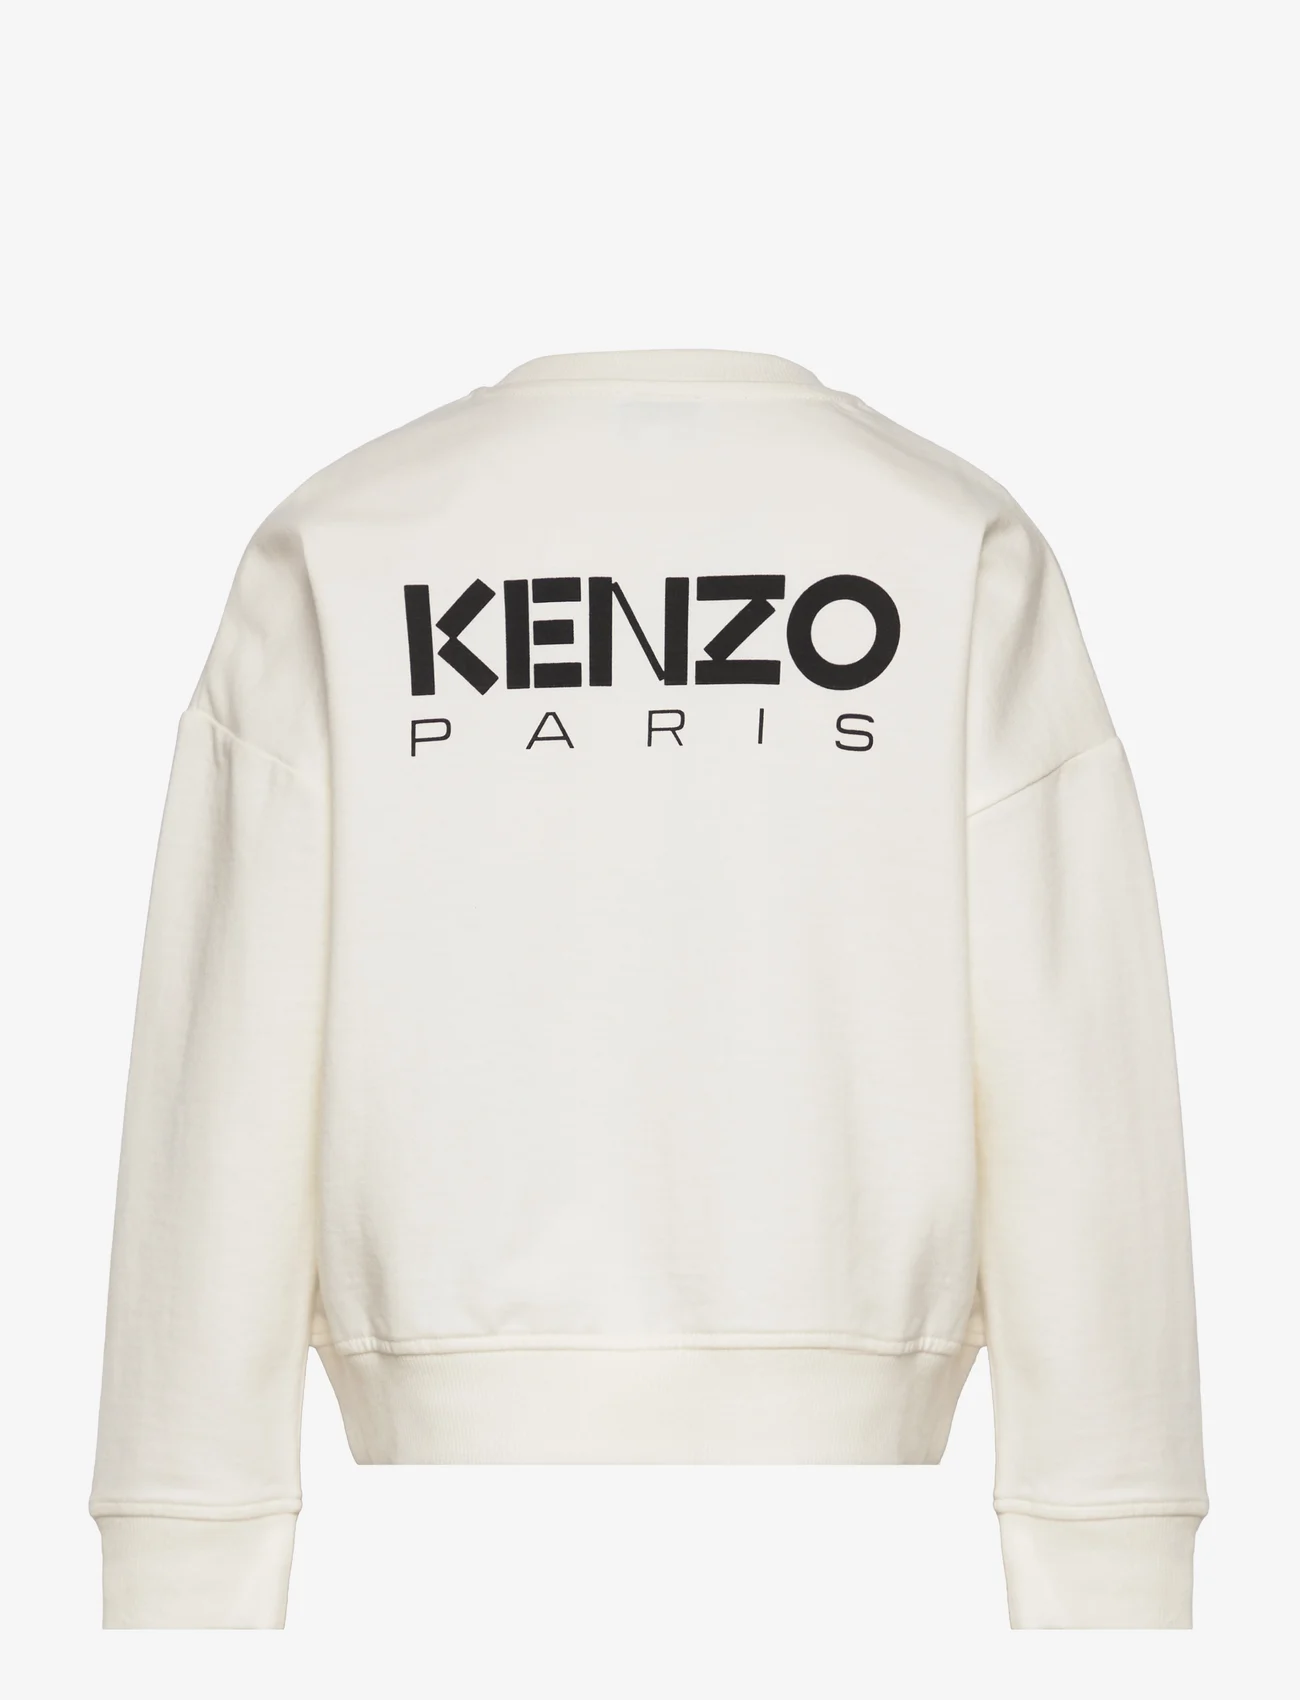 Kenzo - SWEATSHIRT - sweatshirts - ivory - 1